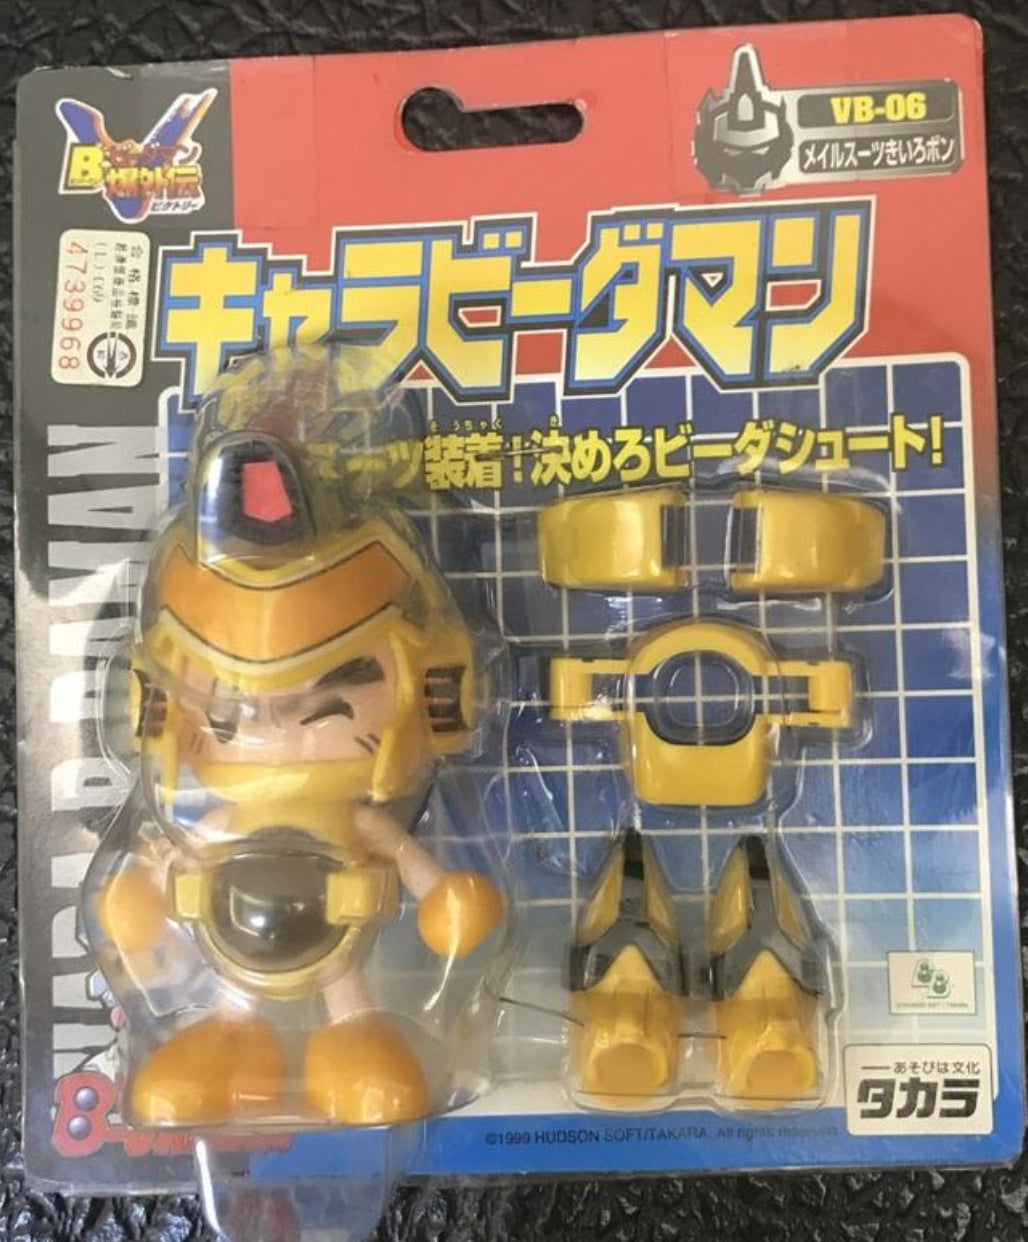 Takara 1999 B-Daman Bomberman VB-06 Armor Suit Yellow Model Kit Action Figure